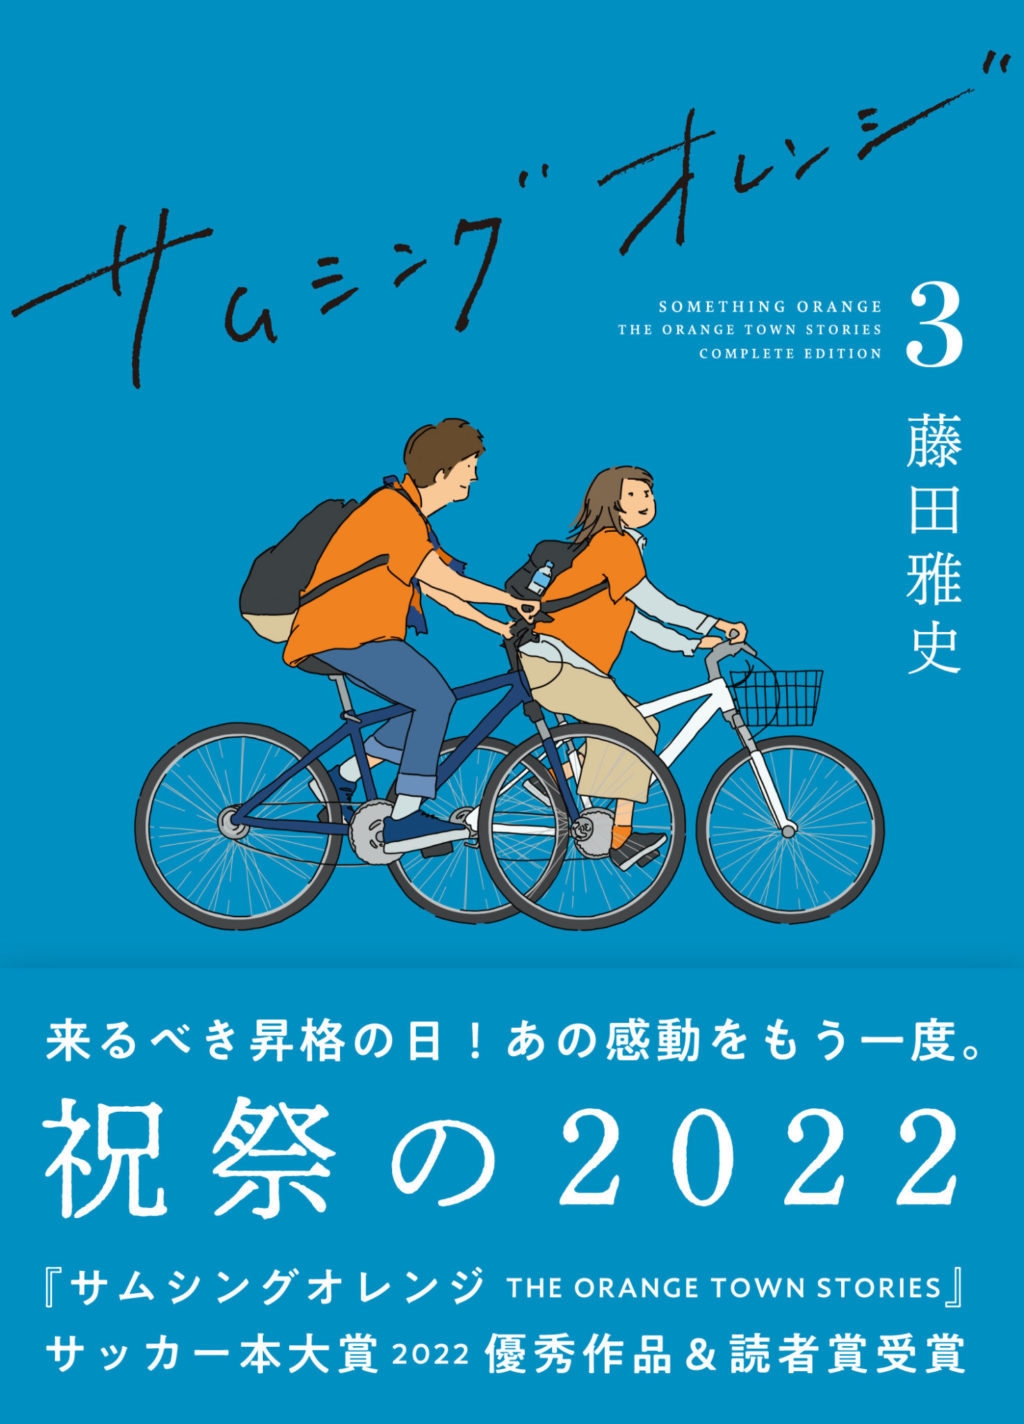 藤田雅史『サムシングオレンジ COMPLETE EDITION 3：祝祭の2022』